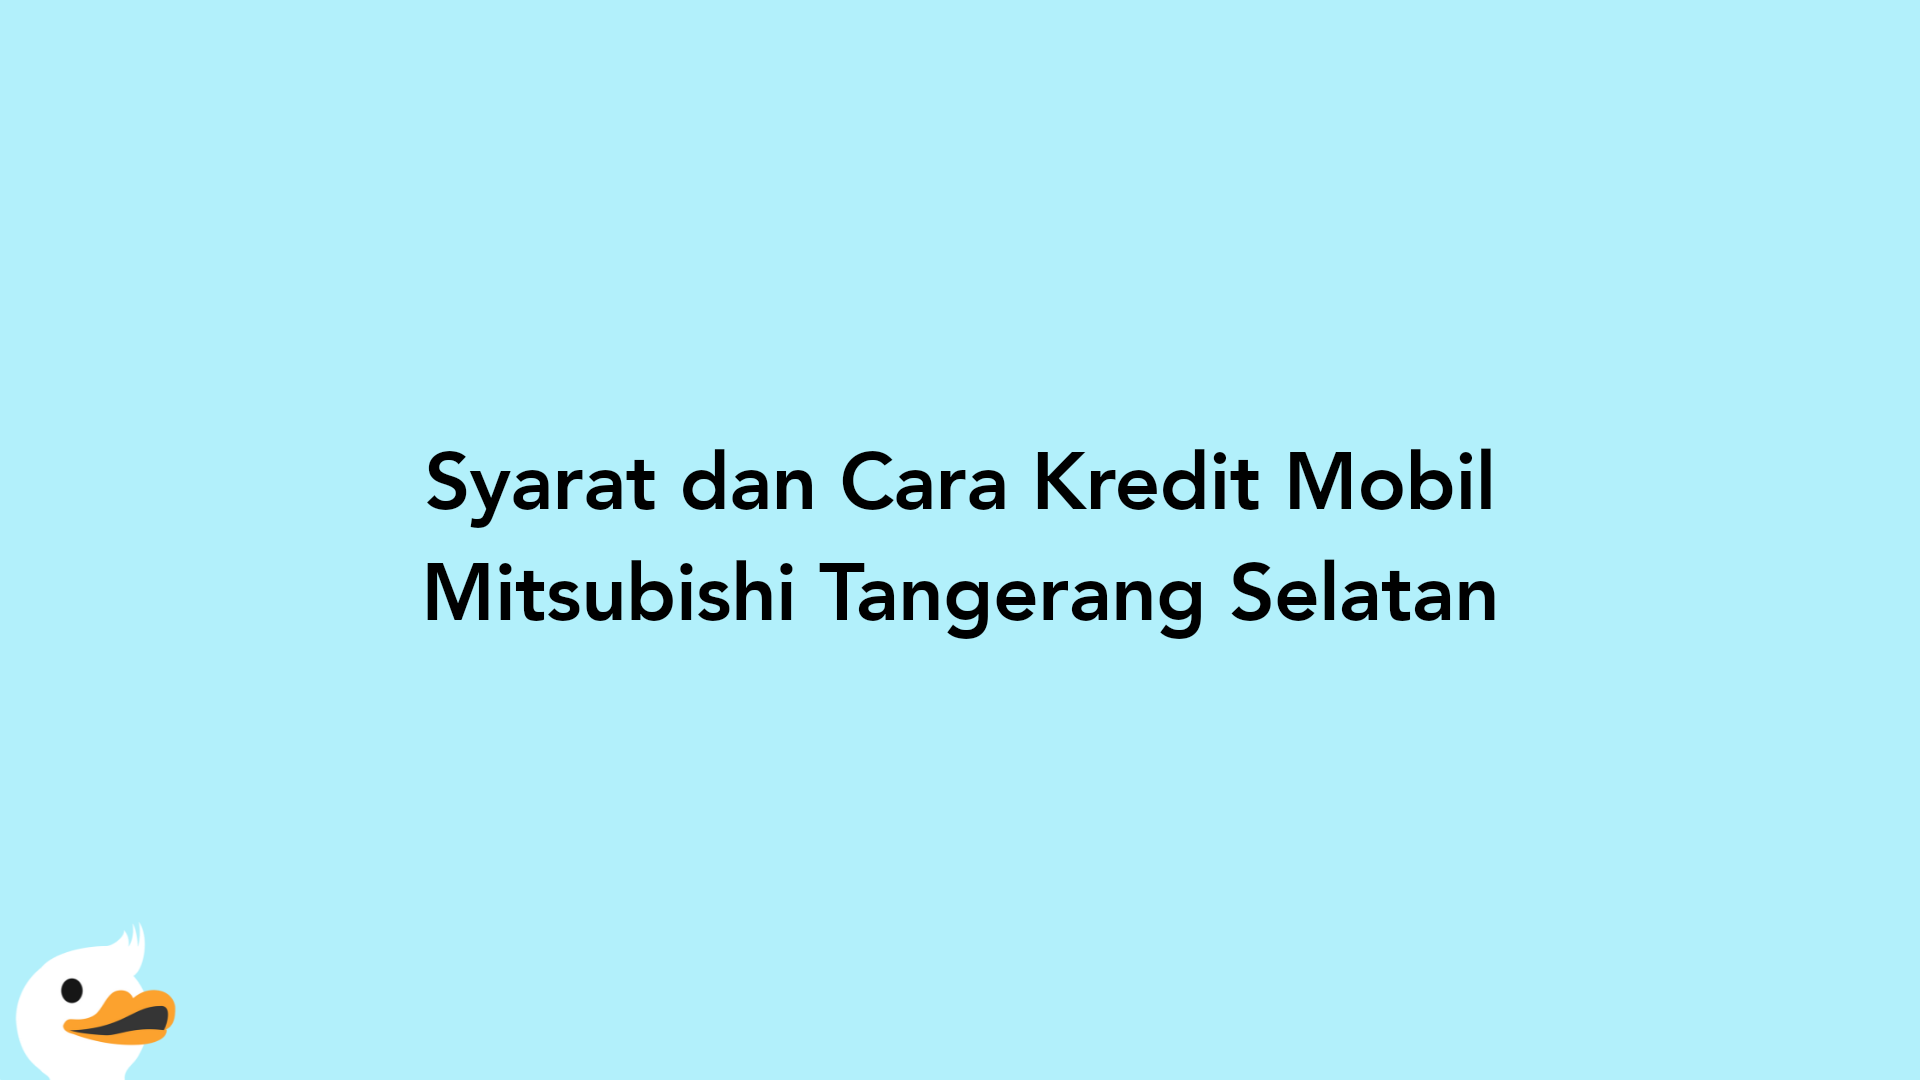 Syarat dan Cara Kredit Mobil Mitsubishi Tangerang Selatan